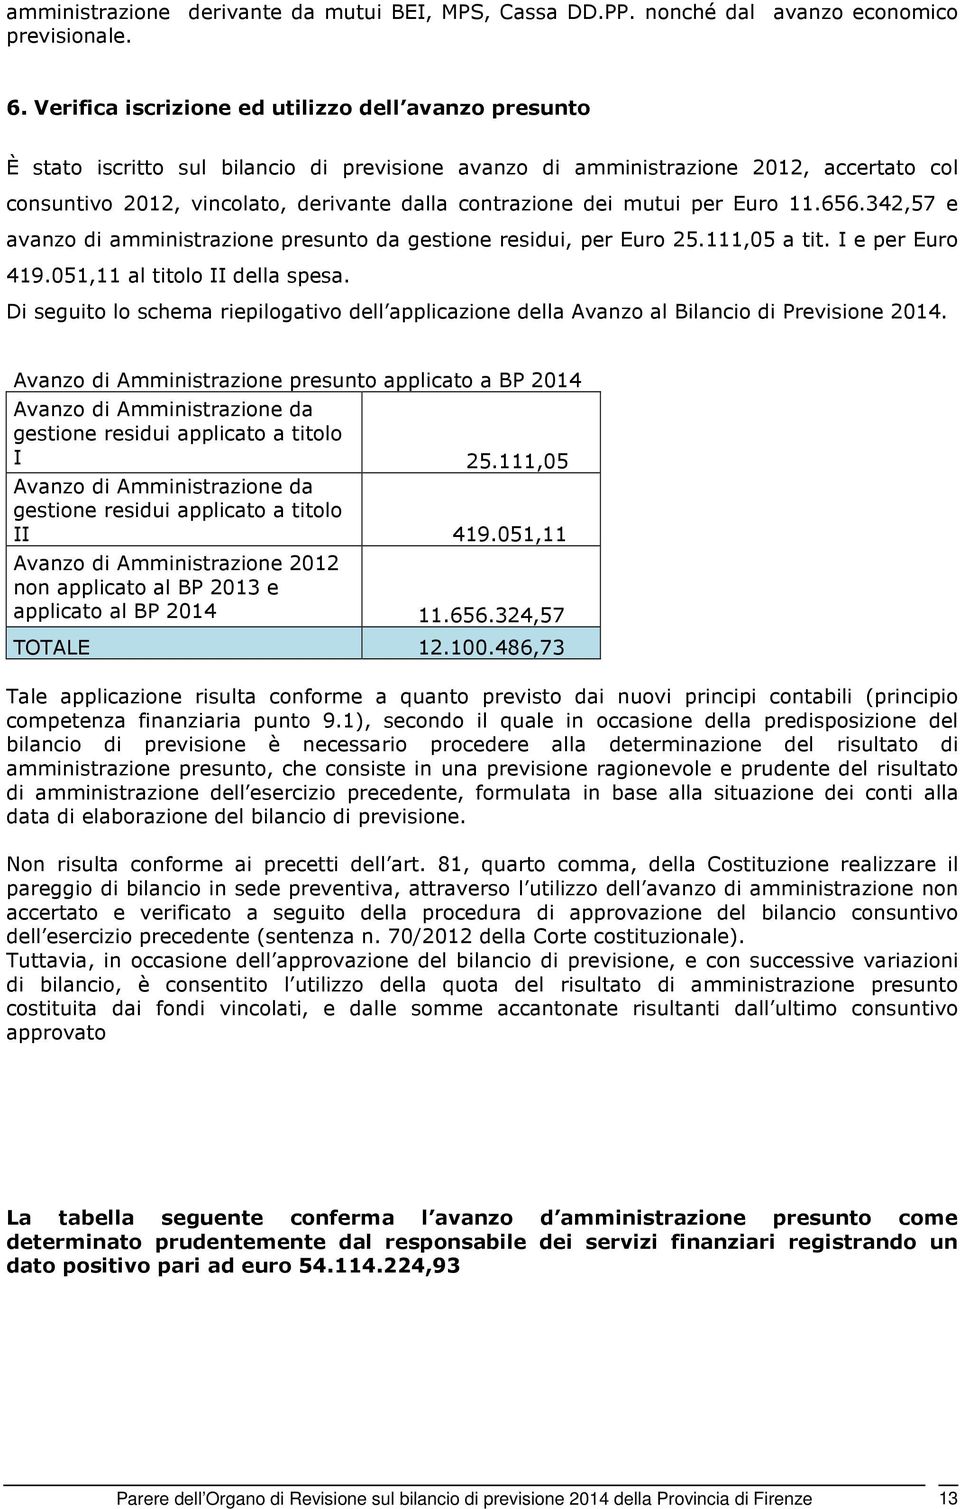 dei mutui per Euro 11.656.342,57 e avanzo di amministrazione presunto da gestione residui, per Euro 25.111,05 a tit. I e per Euro 419.051,11 al titolo II della spesa.